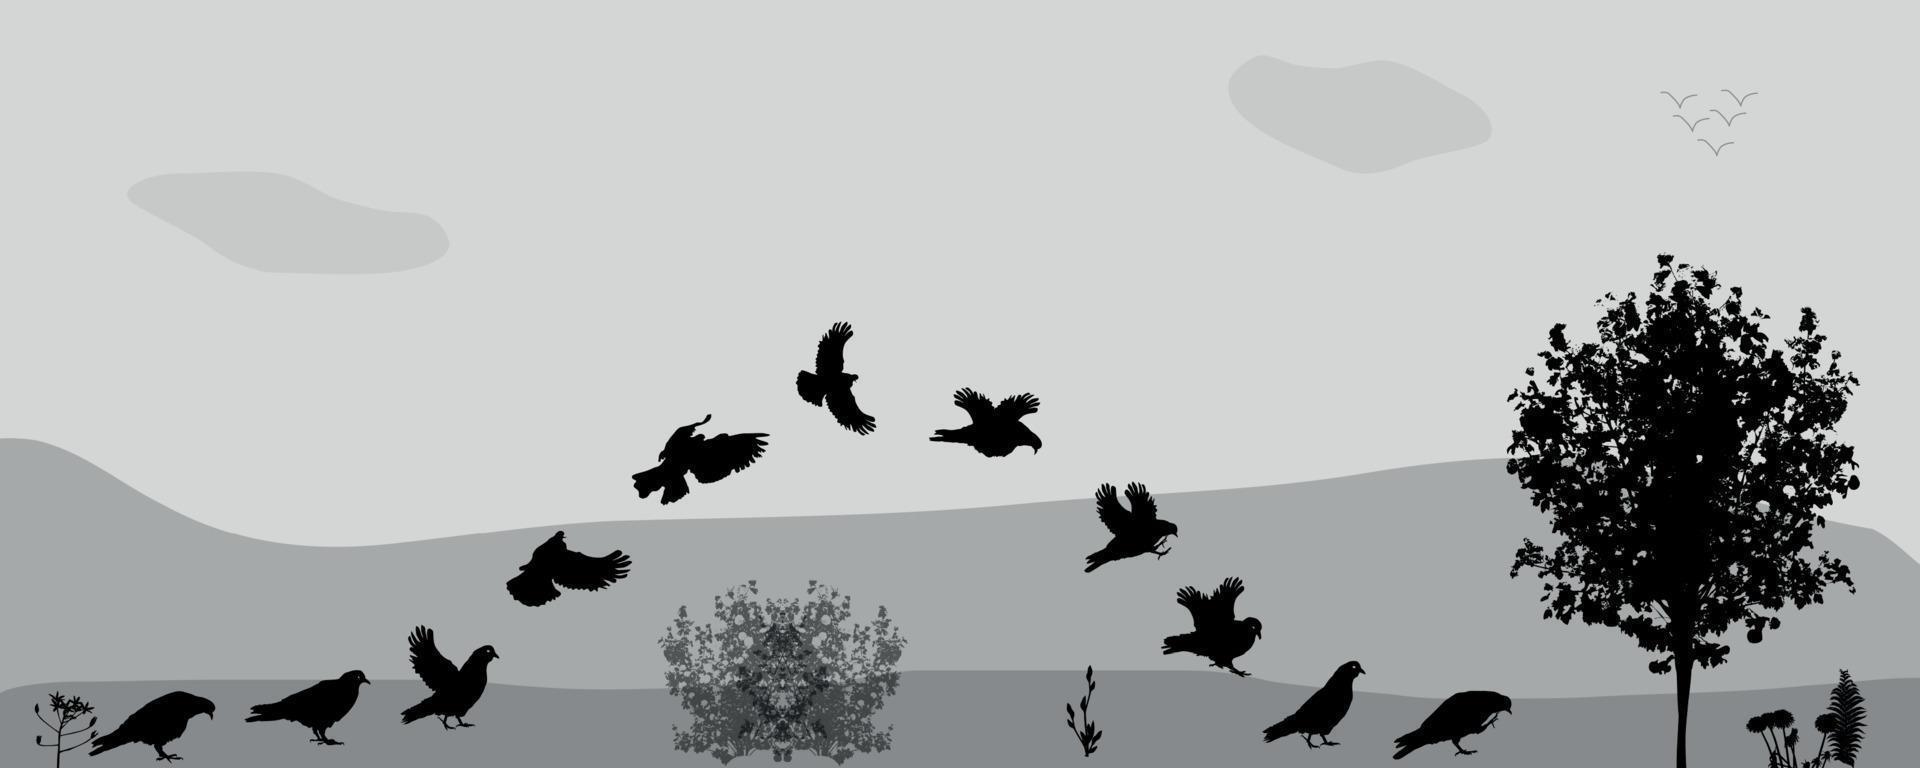 gli uccelli volano in natura. illustrazione vettoriale. vettore